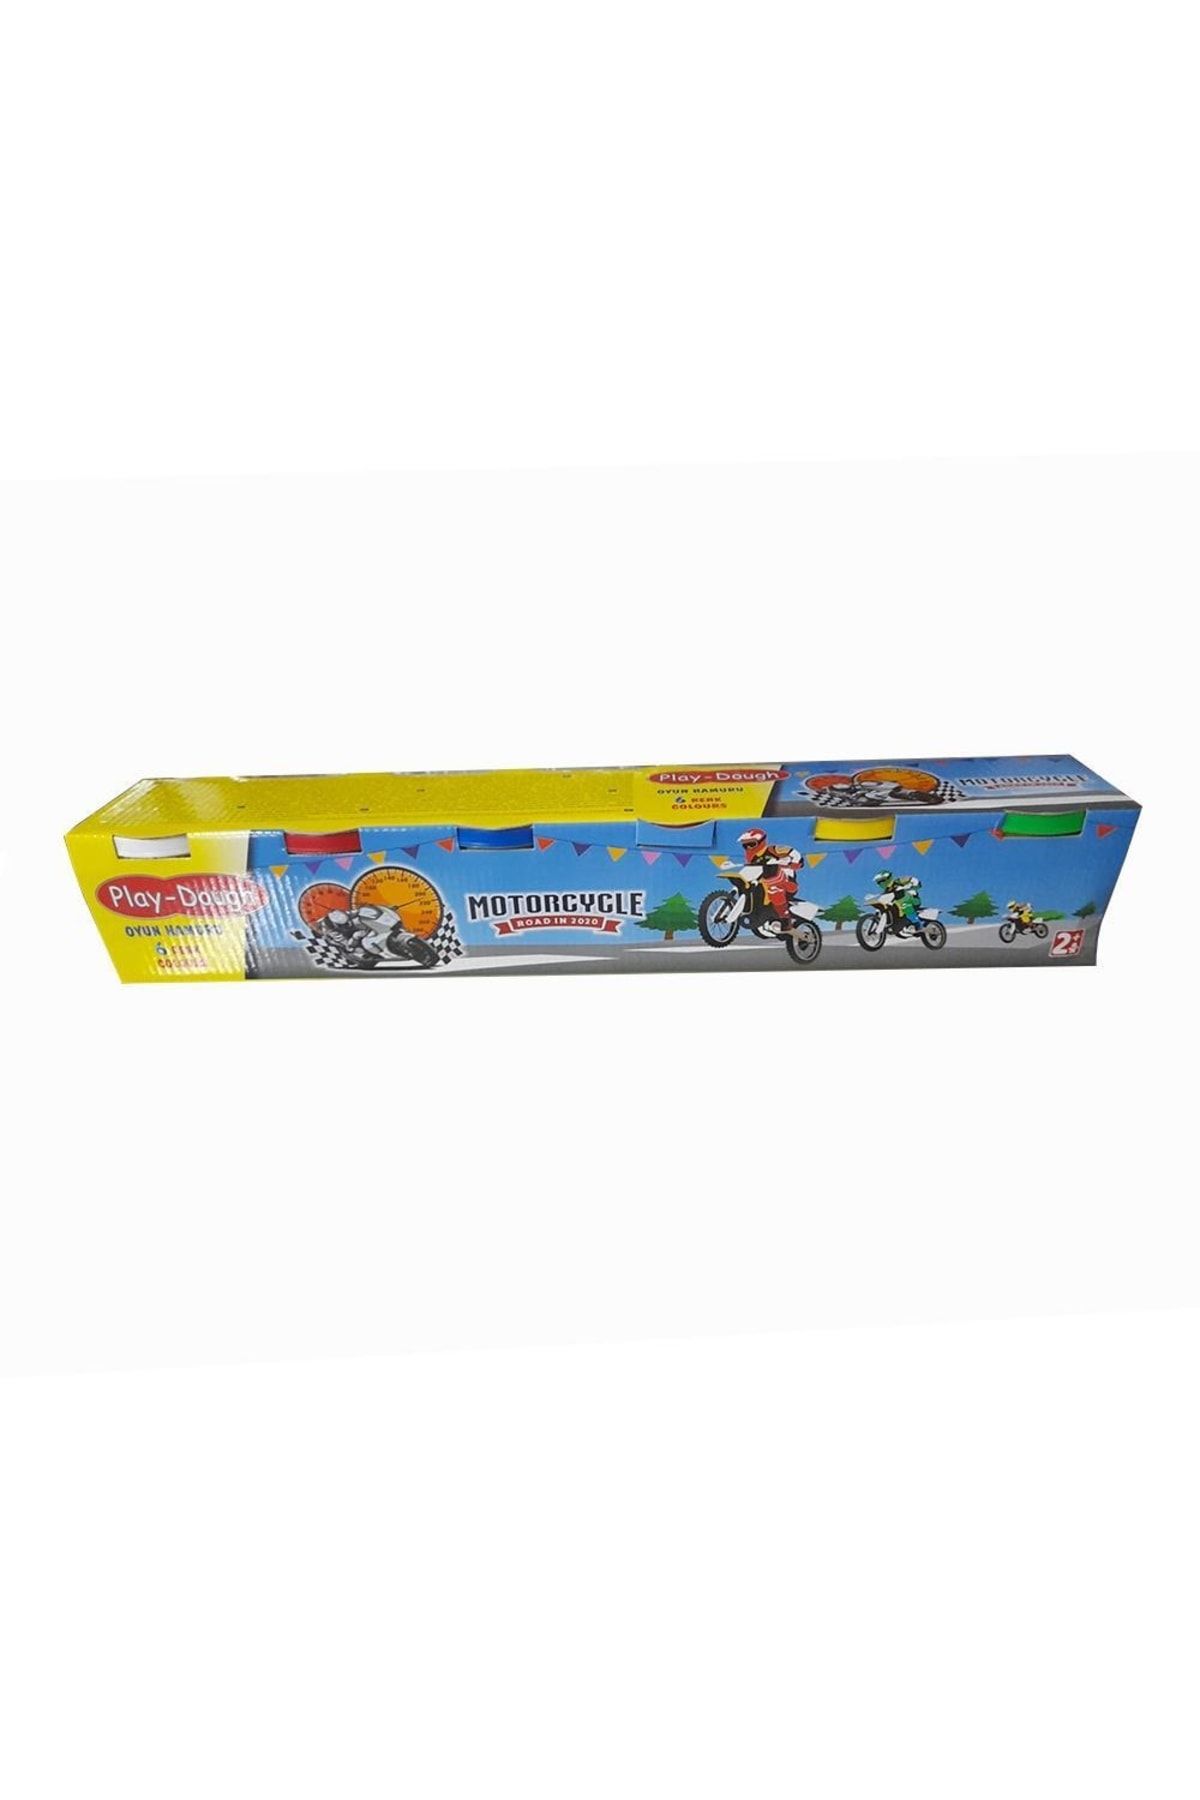 Eren Oyun Hamuru 6 Lı Play-dough Motorcycle 1 Paket Oyun Hamuru Seti 6 Renk